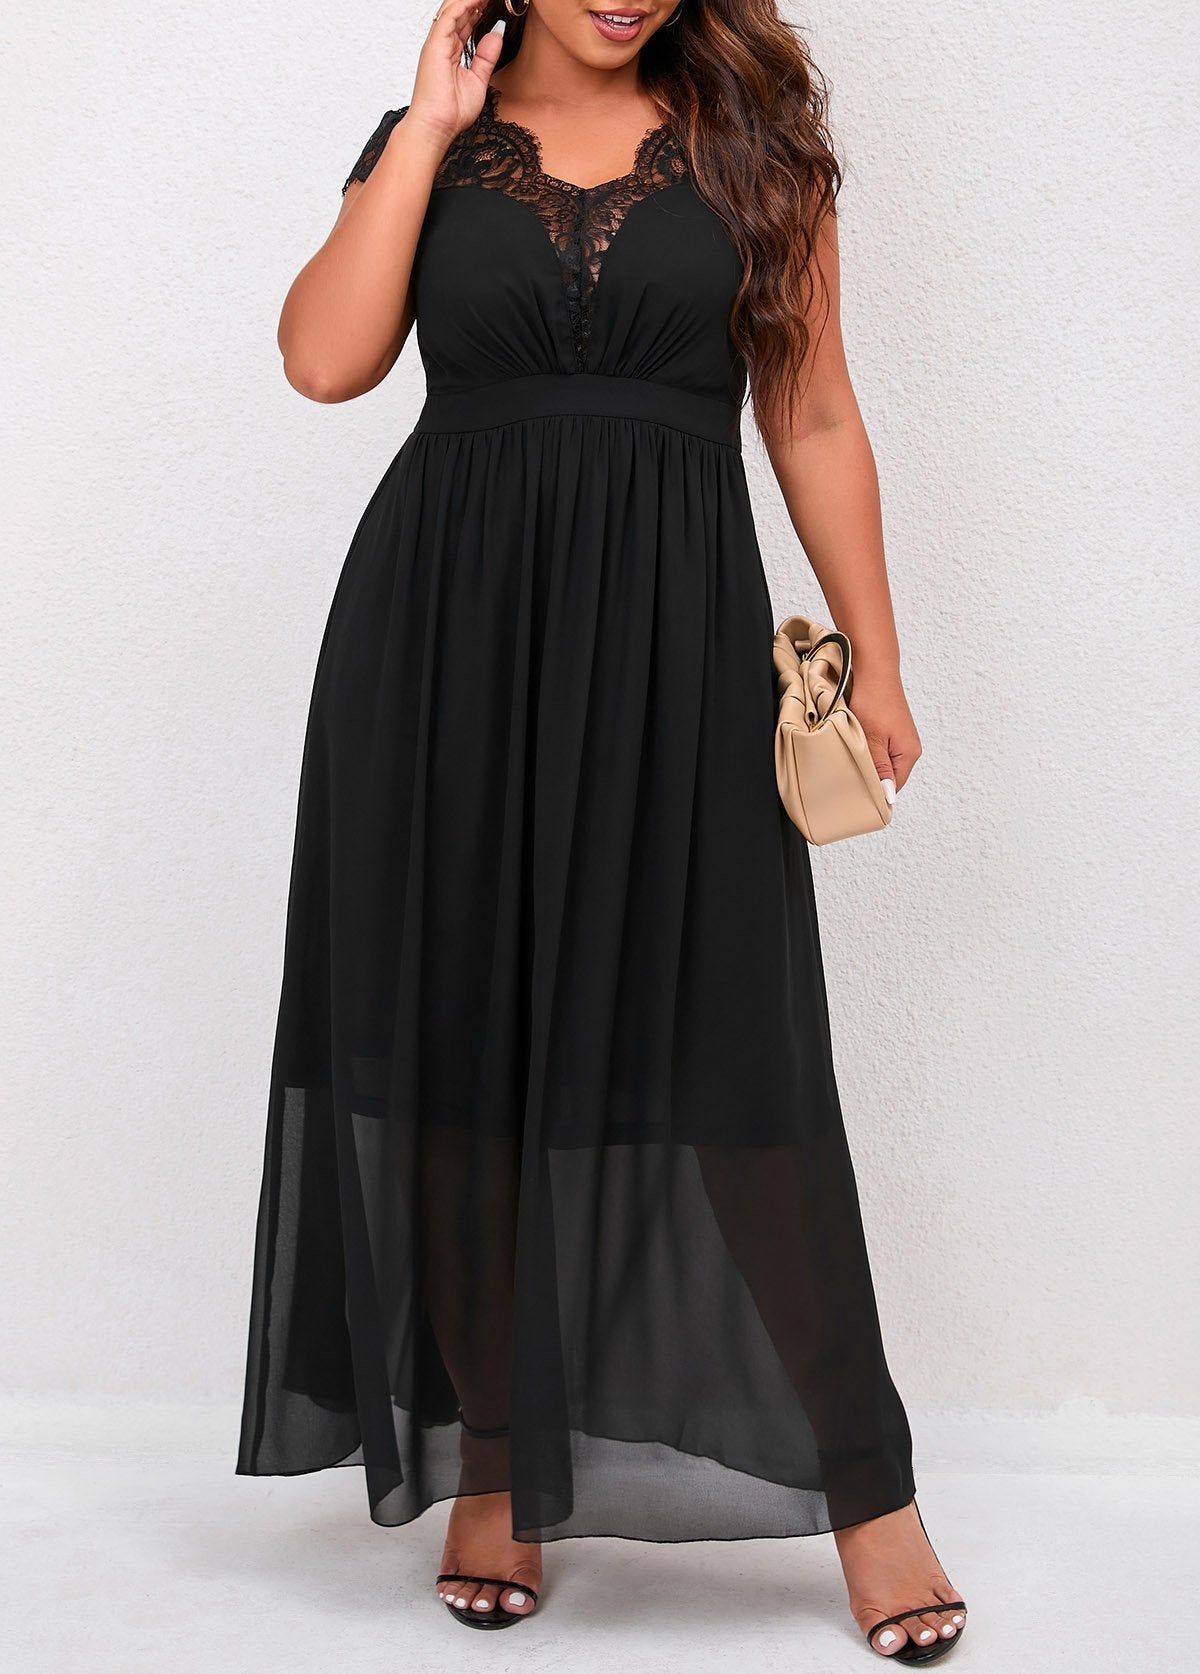 Plus Size Lace Patchwork Black Dress